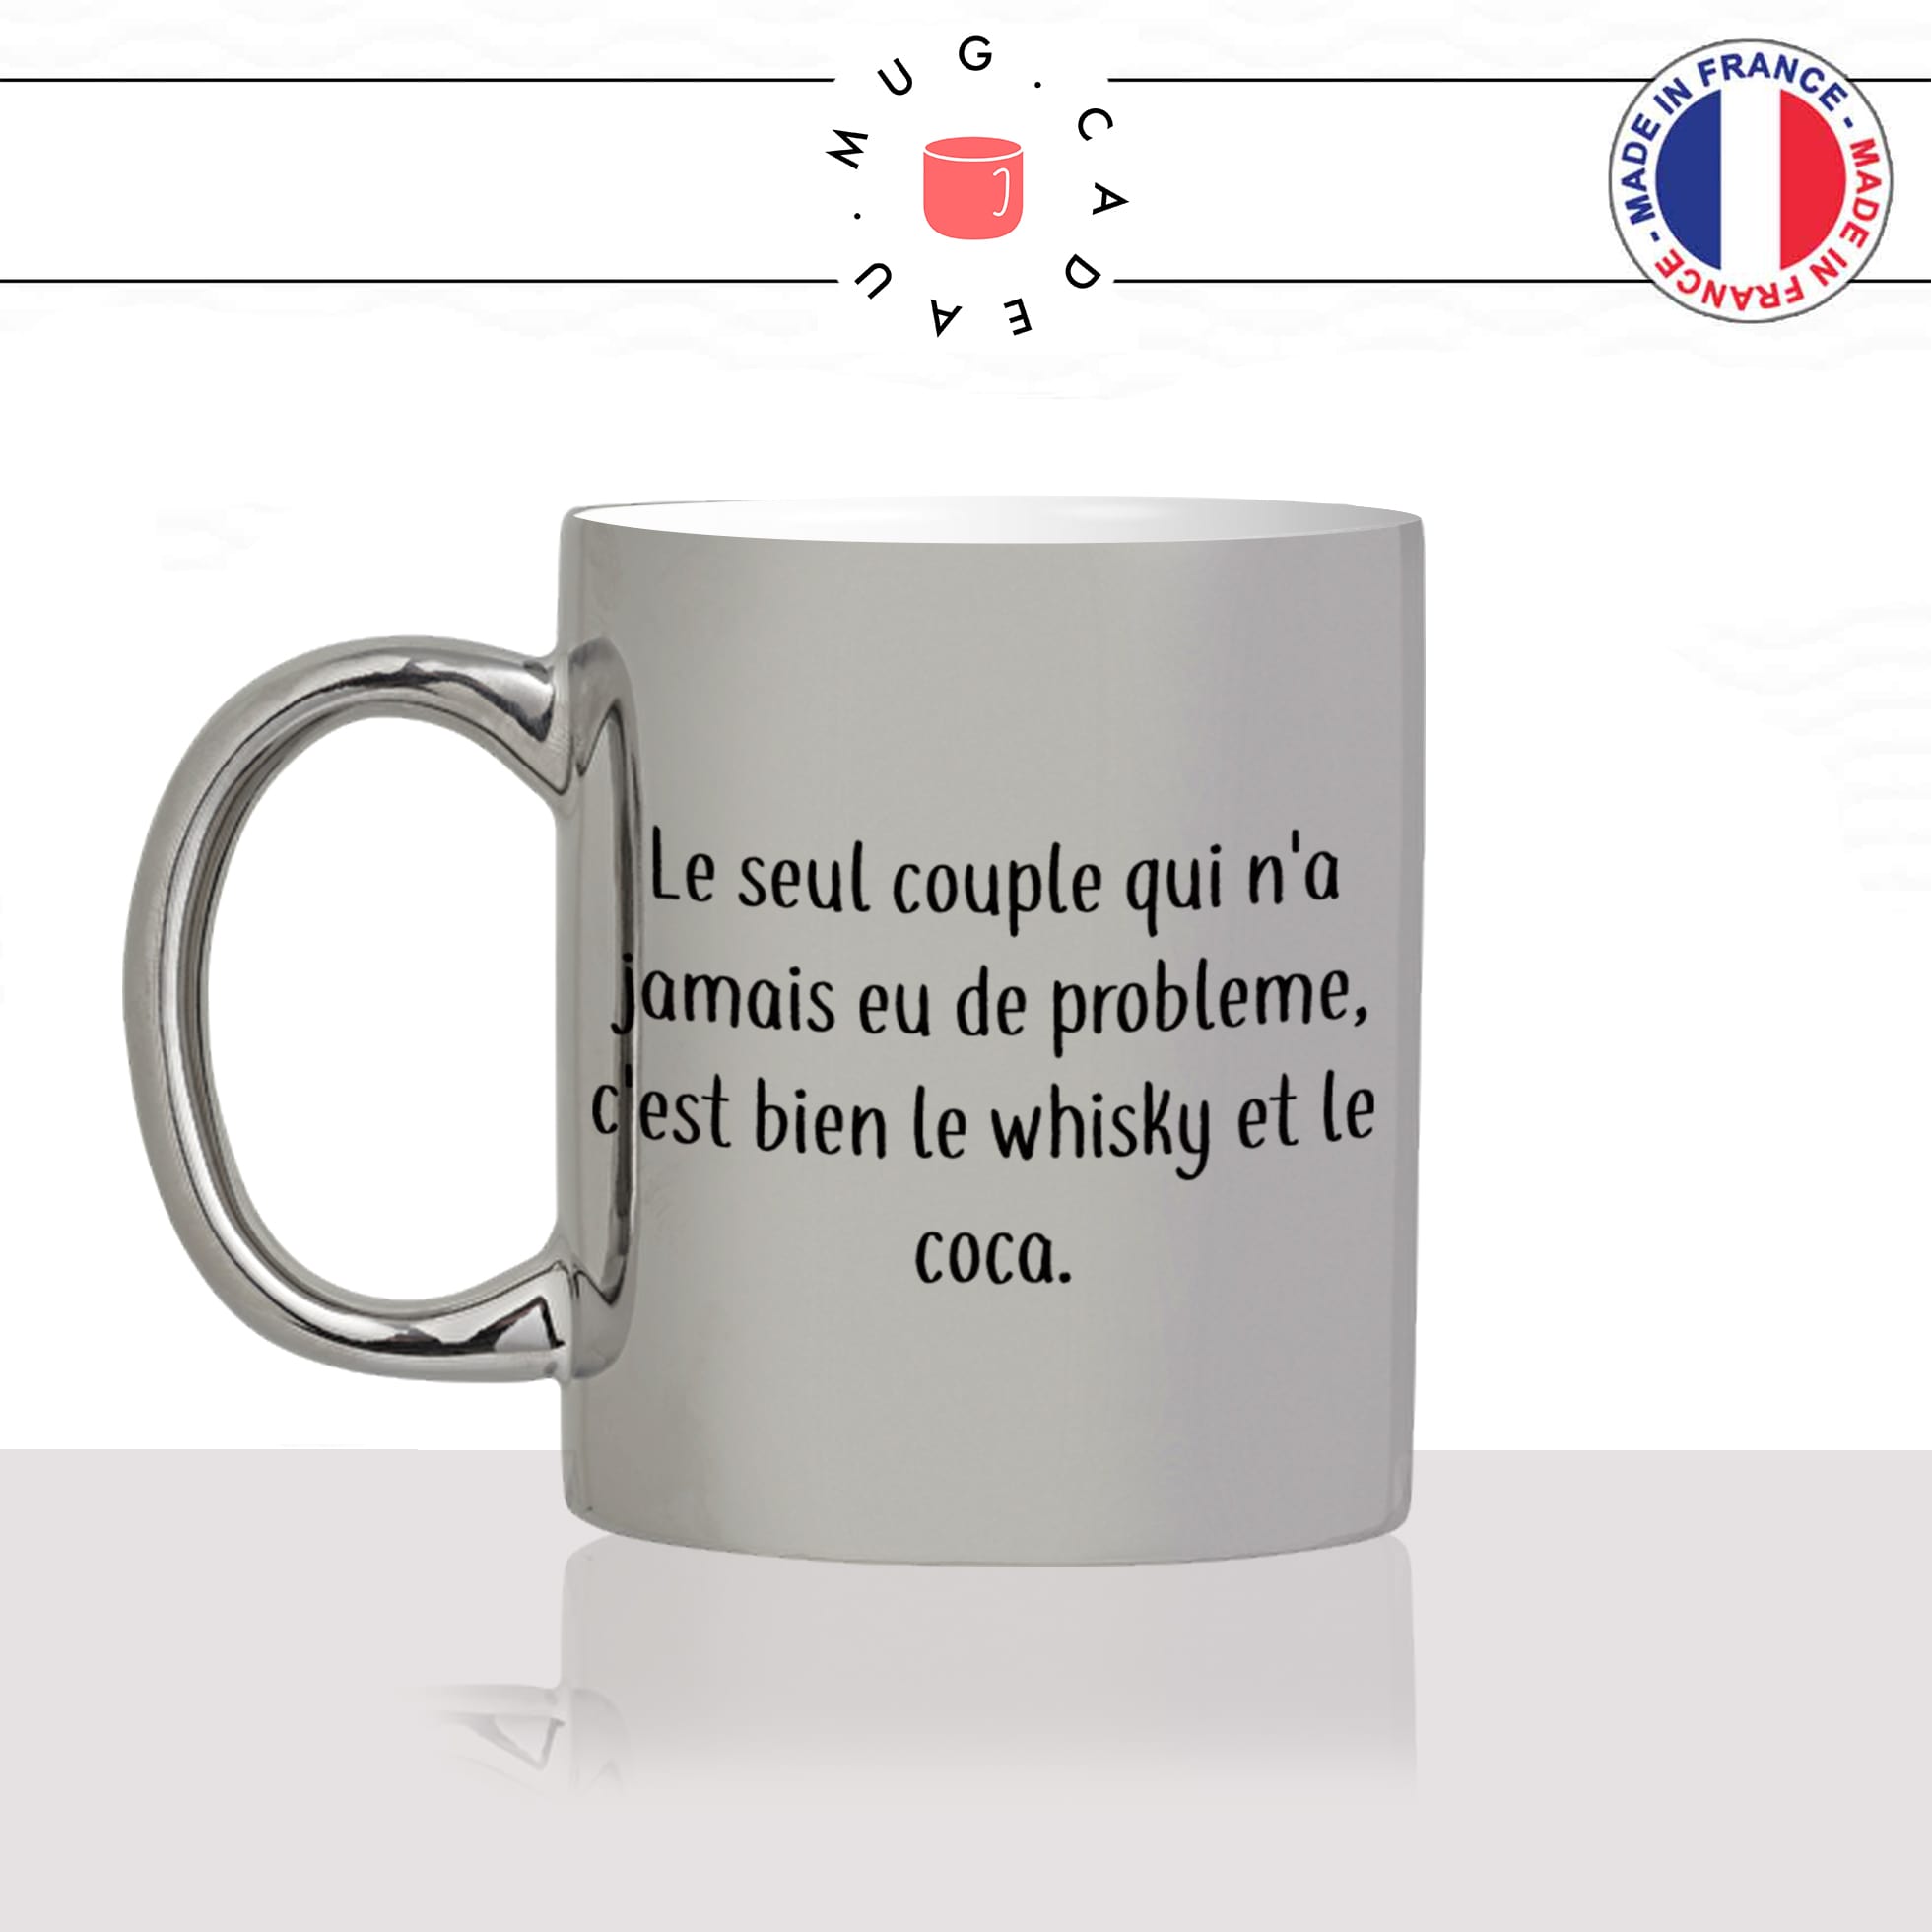 mug-tasse-silver-argenté-argent-whisky-coca-jack-daniels-drole-humour-couple-amour-celibataire-idée-cadeau-original-personnalisé-café-thé-min